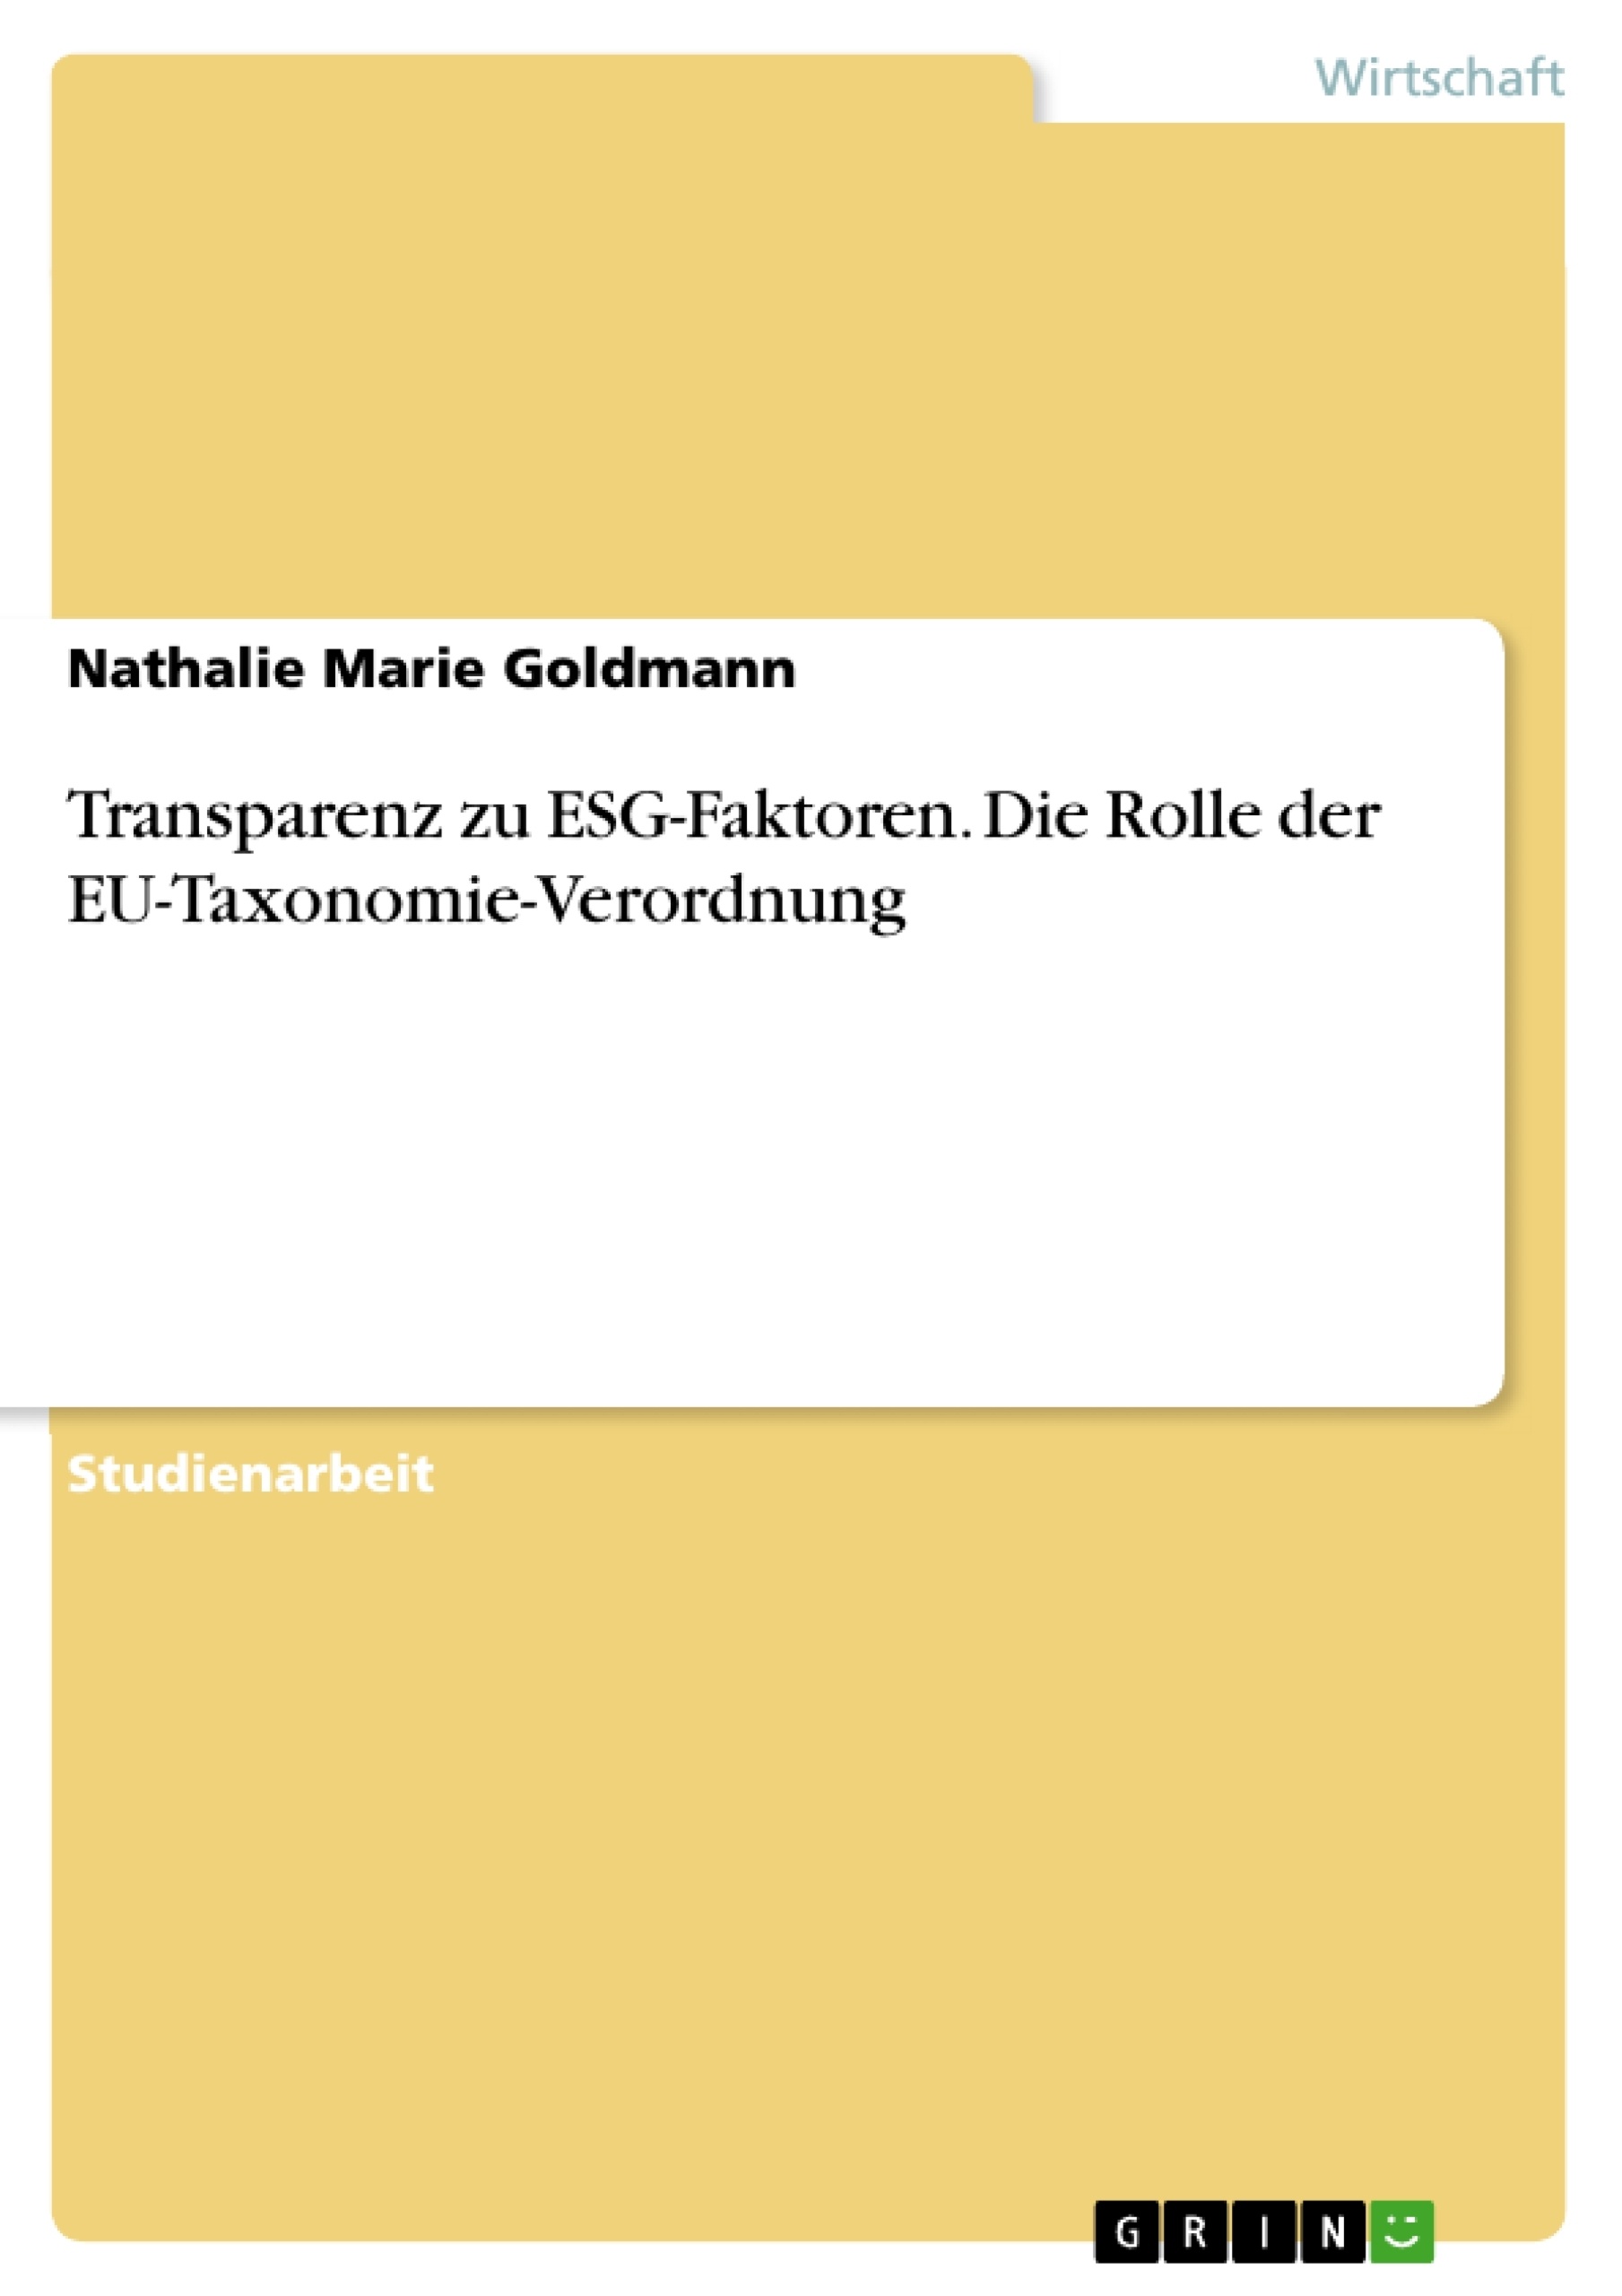 Title: Transparenz zu ESG-Faktoren. Die Rolle der EU-Taxonomie-Verordnung